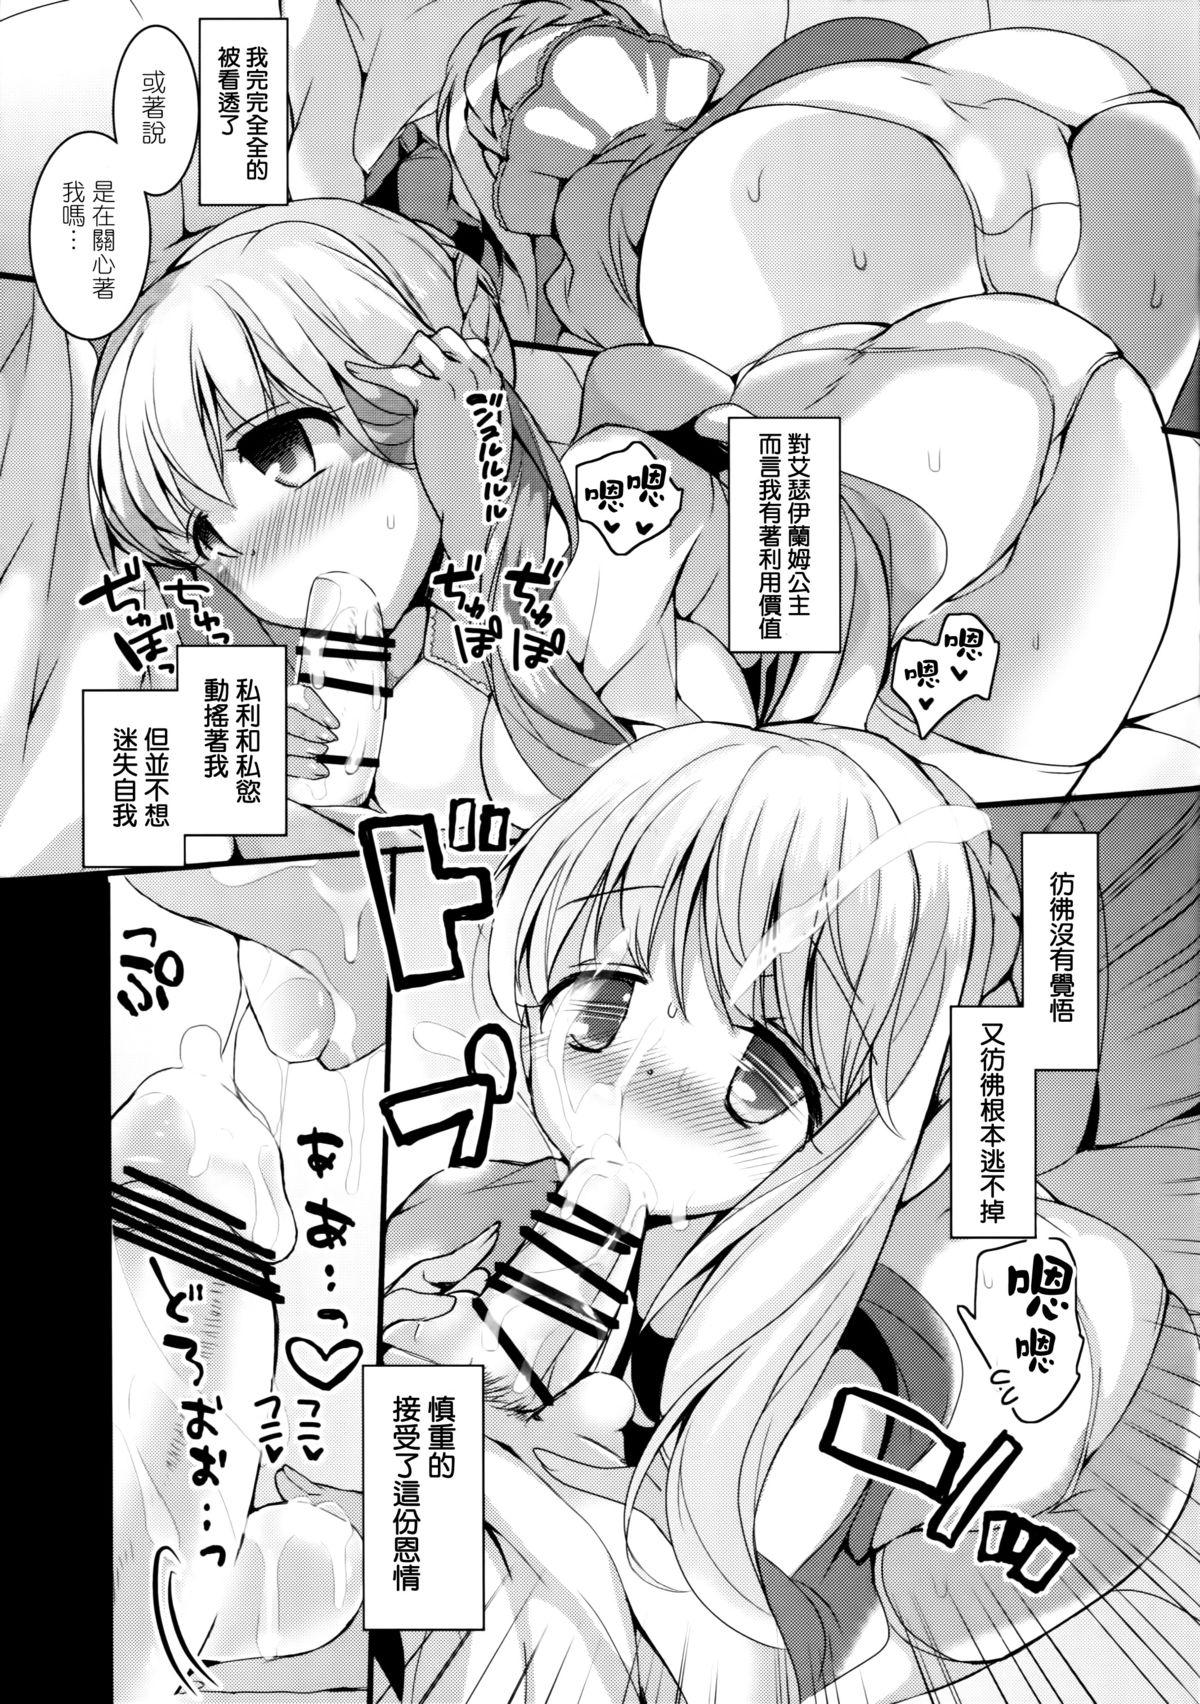 Pantyhose Kasei Hime no Otoshikata - Aldnoah.zero Perfect Porn - Page 8